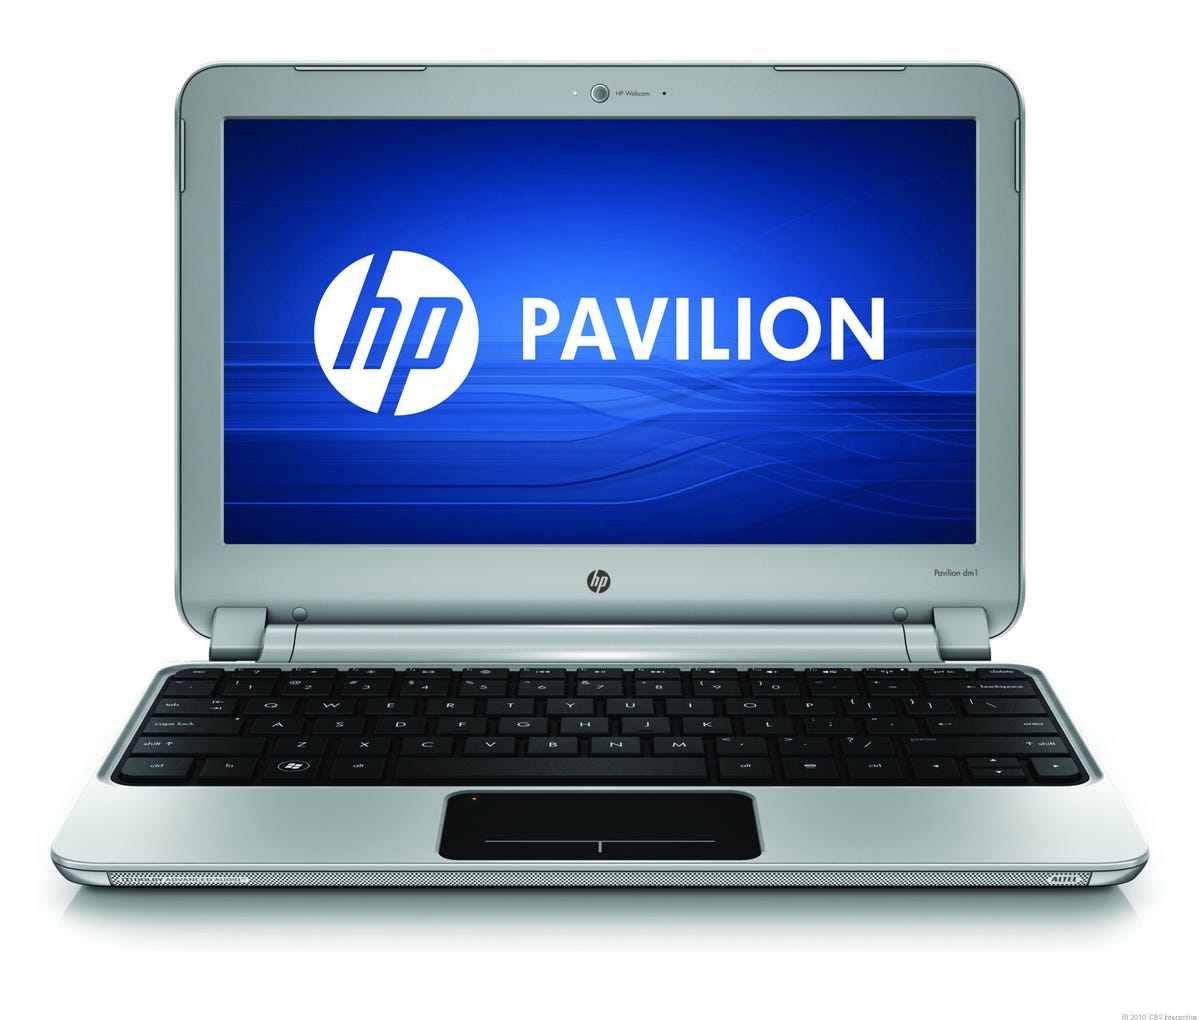 HP_Pavilion_dm1_Entertainment_PC,_Image_1.jpg